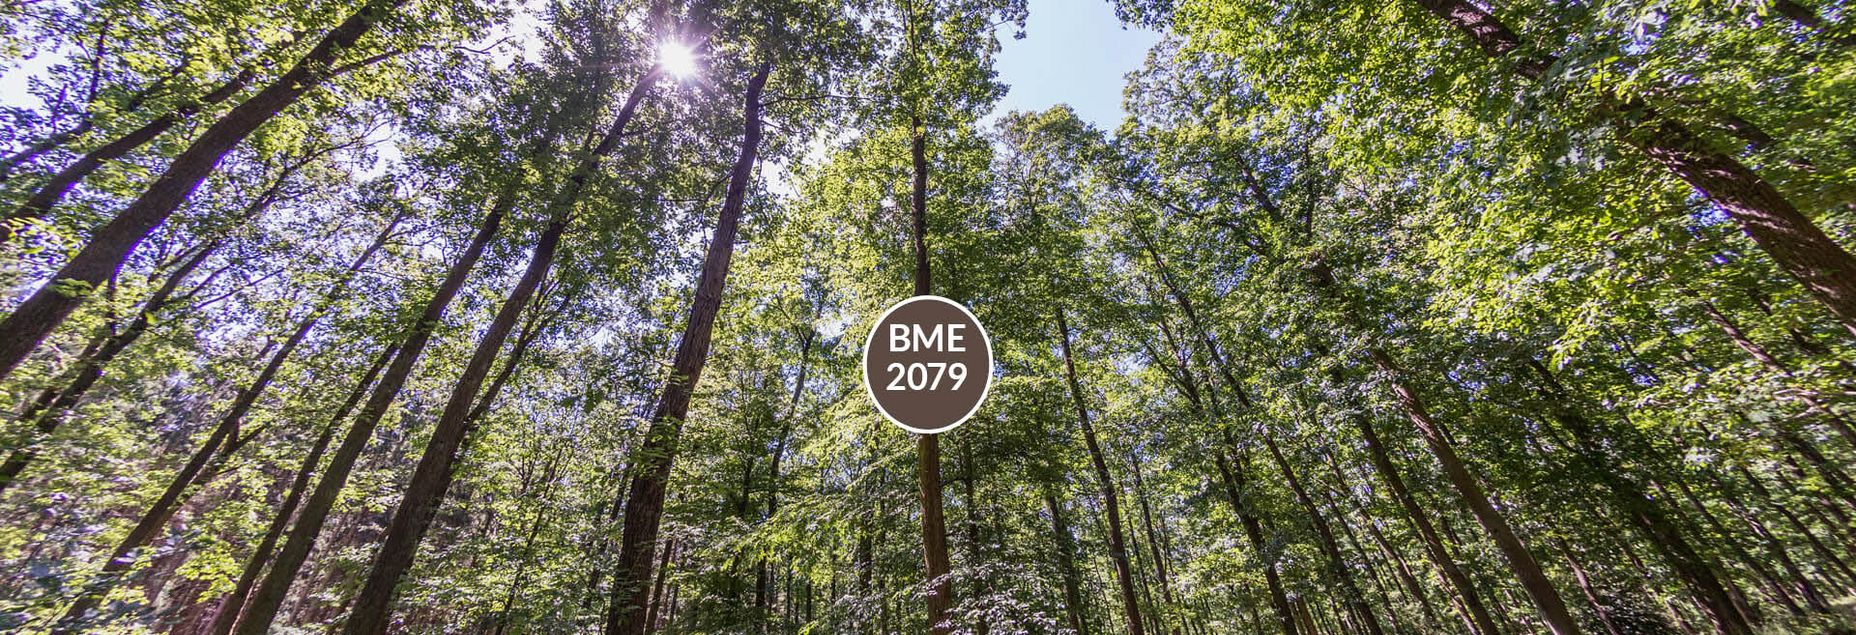 Baum BME 2079 - Fisheyeperspektive